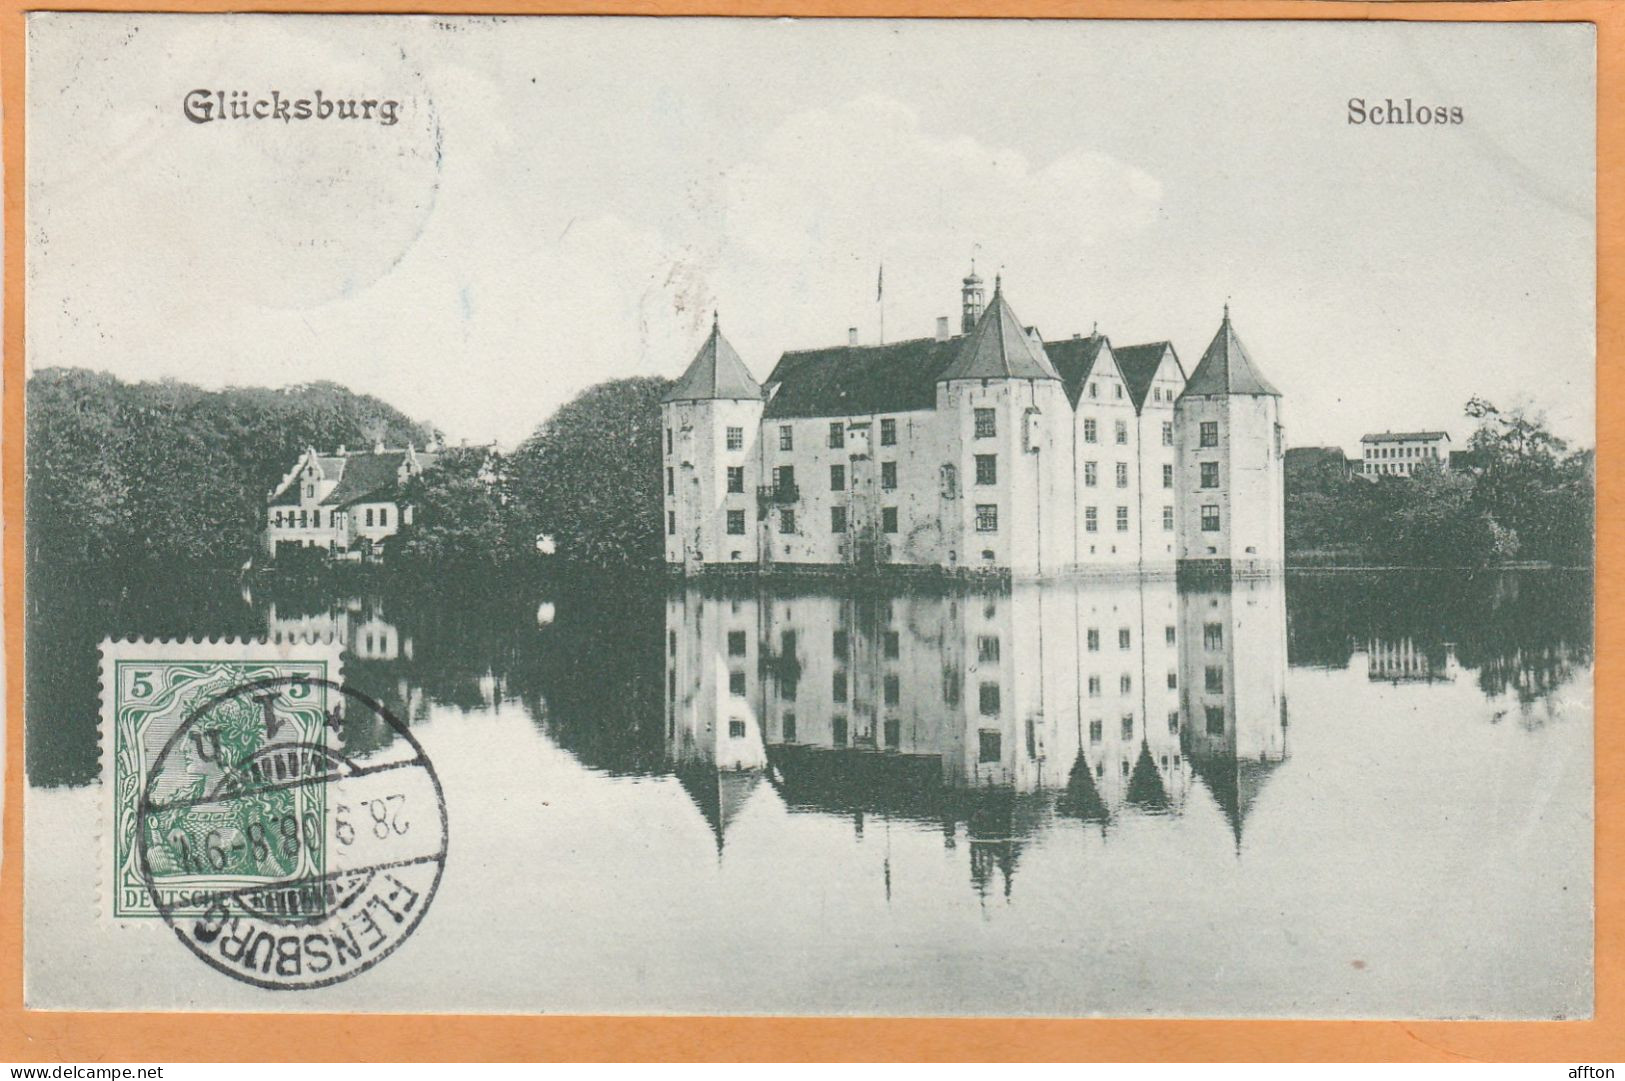 Glucksburg Germany 1908 Postcard - Gluecksburg